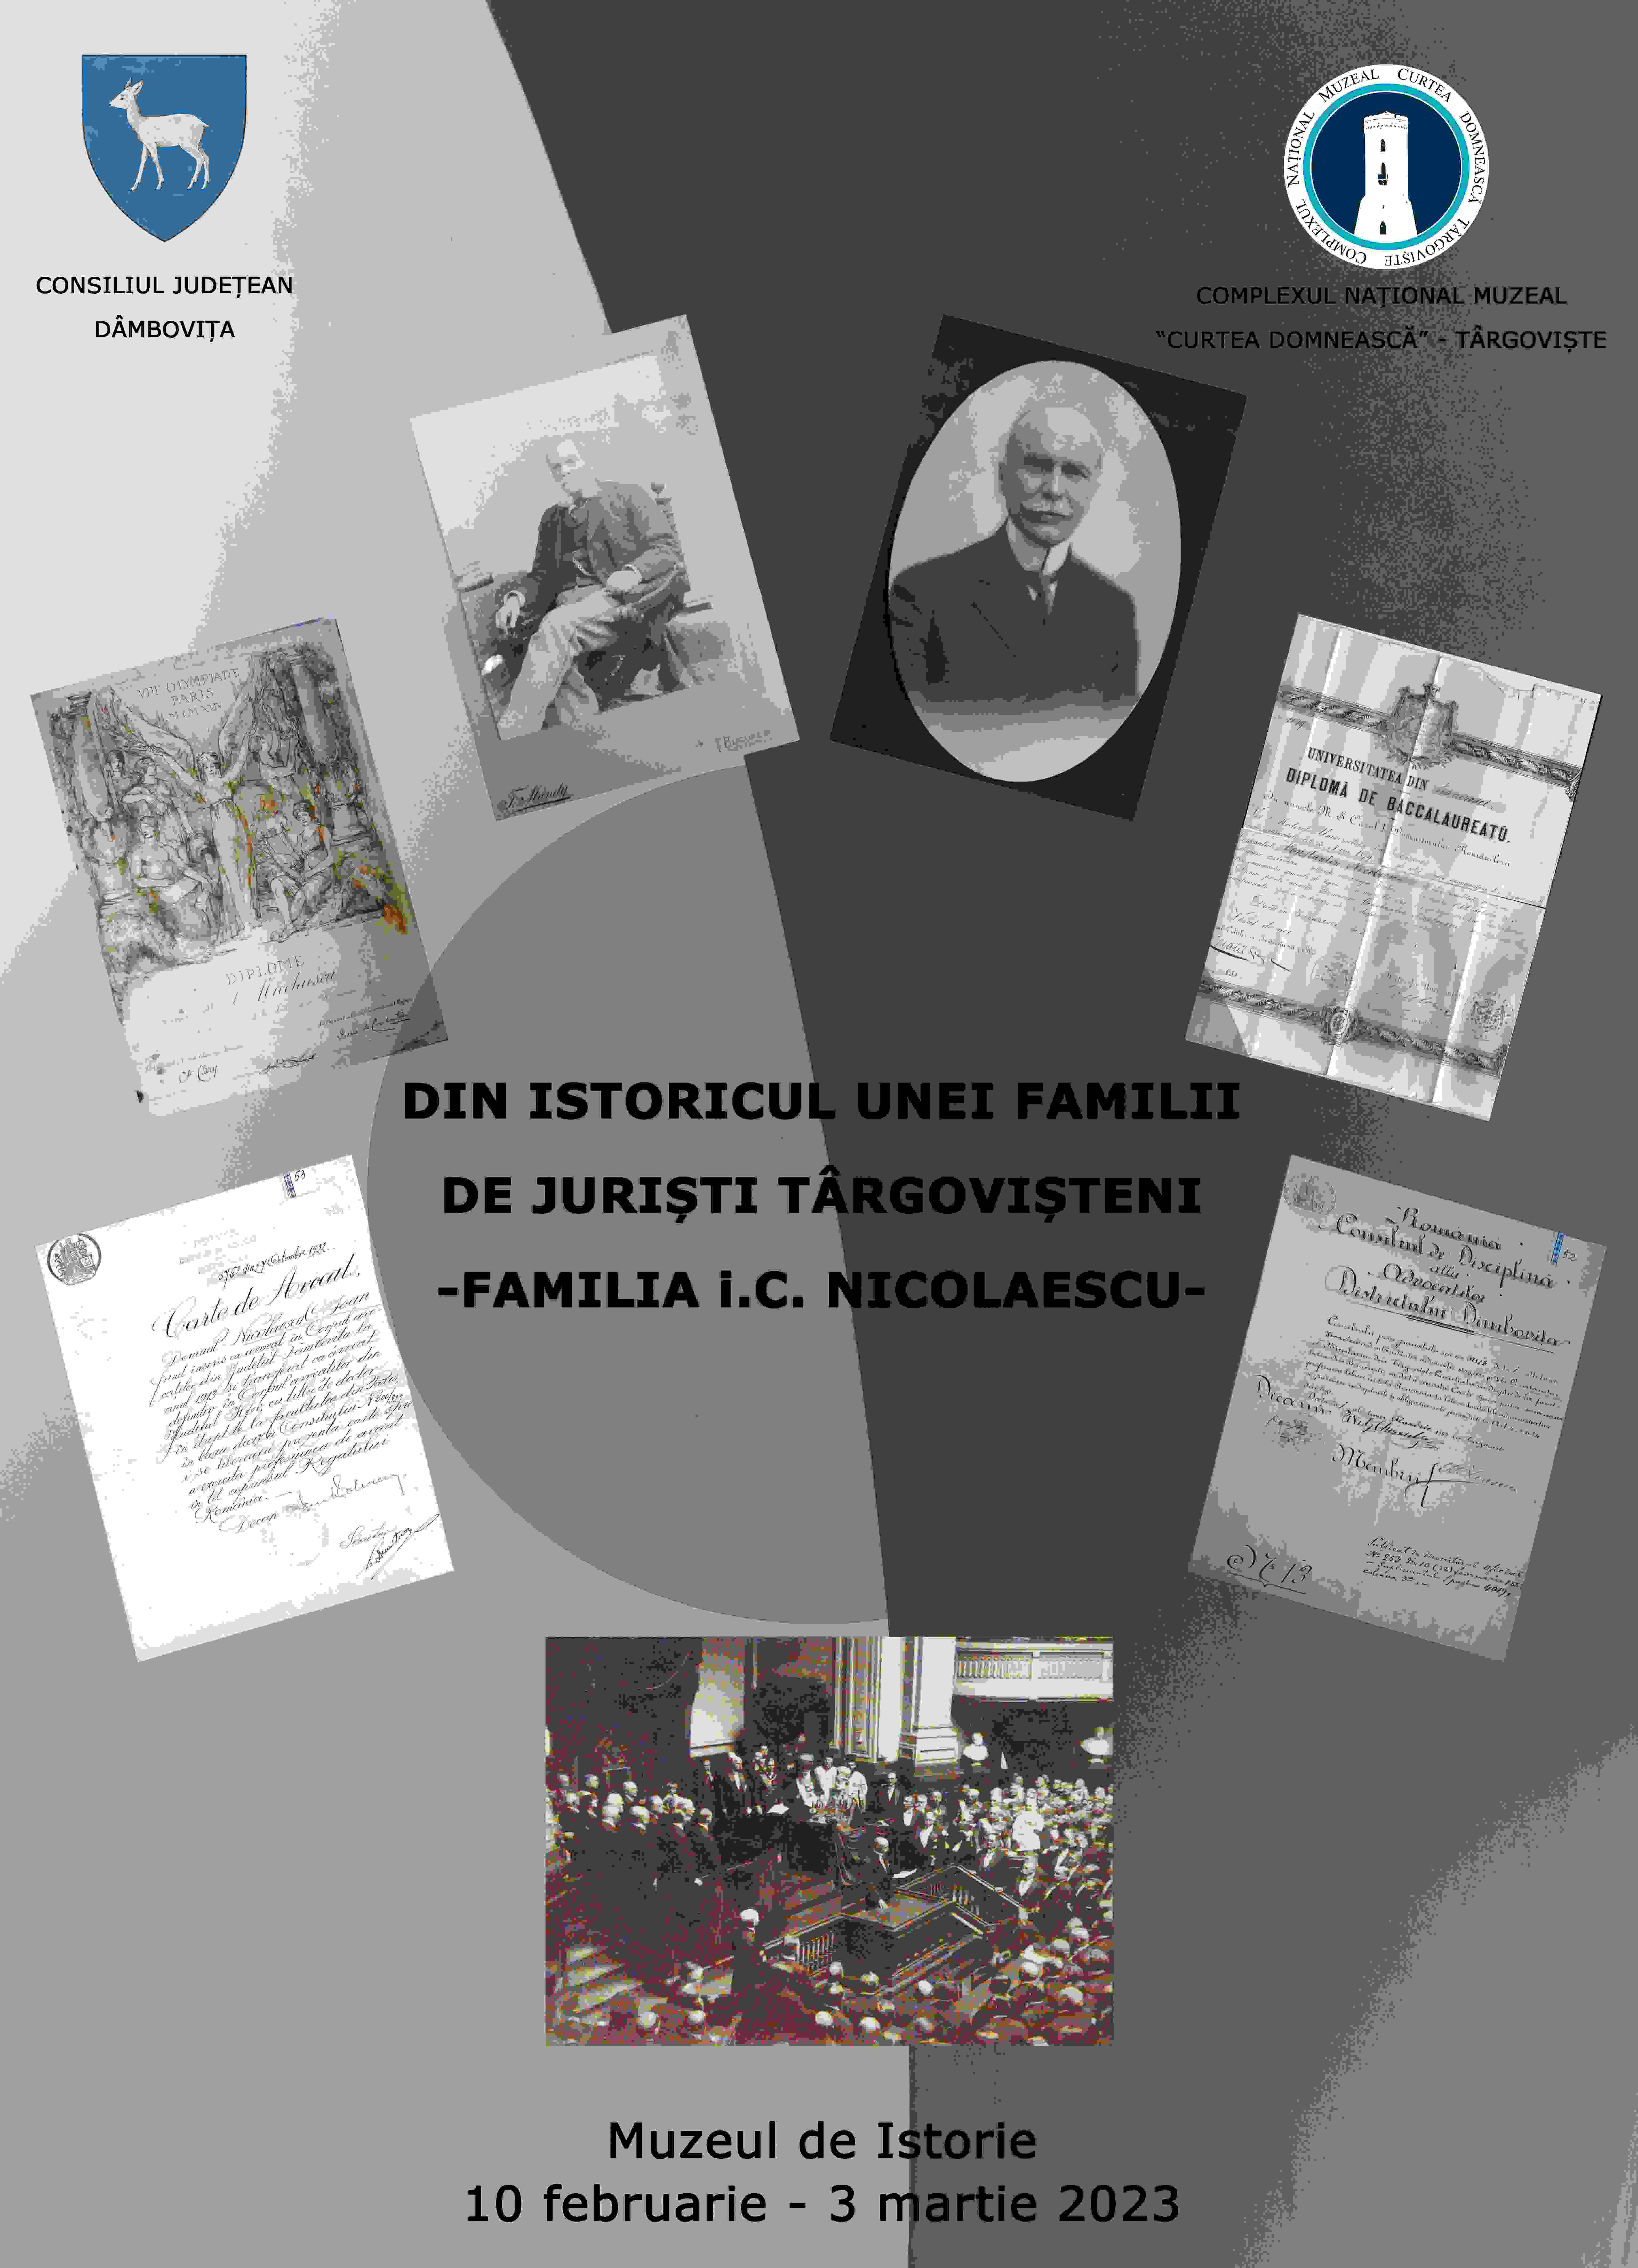  „Din istoricul unei familii de juriști târgovișteni - familia I. C. Nicolaescu”.  Expoziție temporară, deschisă la Muzeul de Istorie